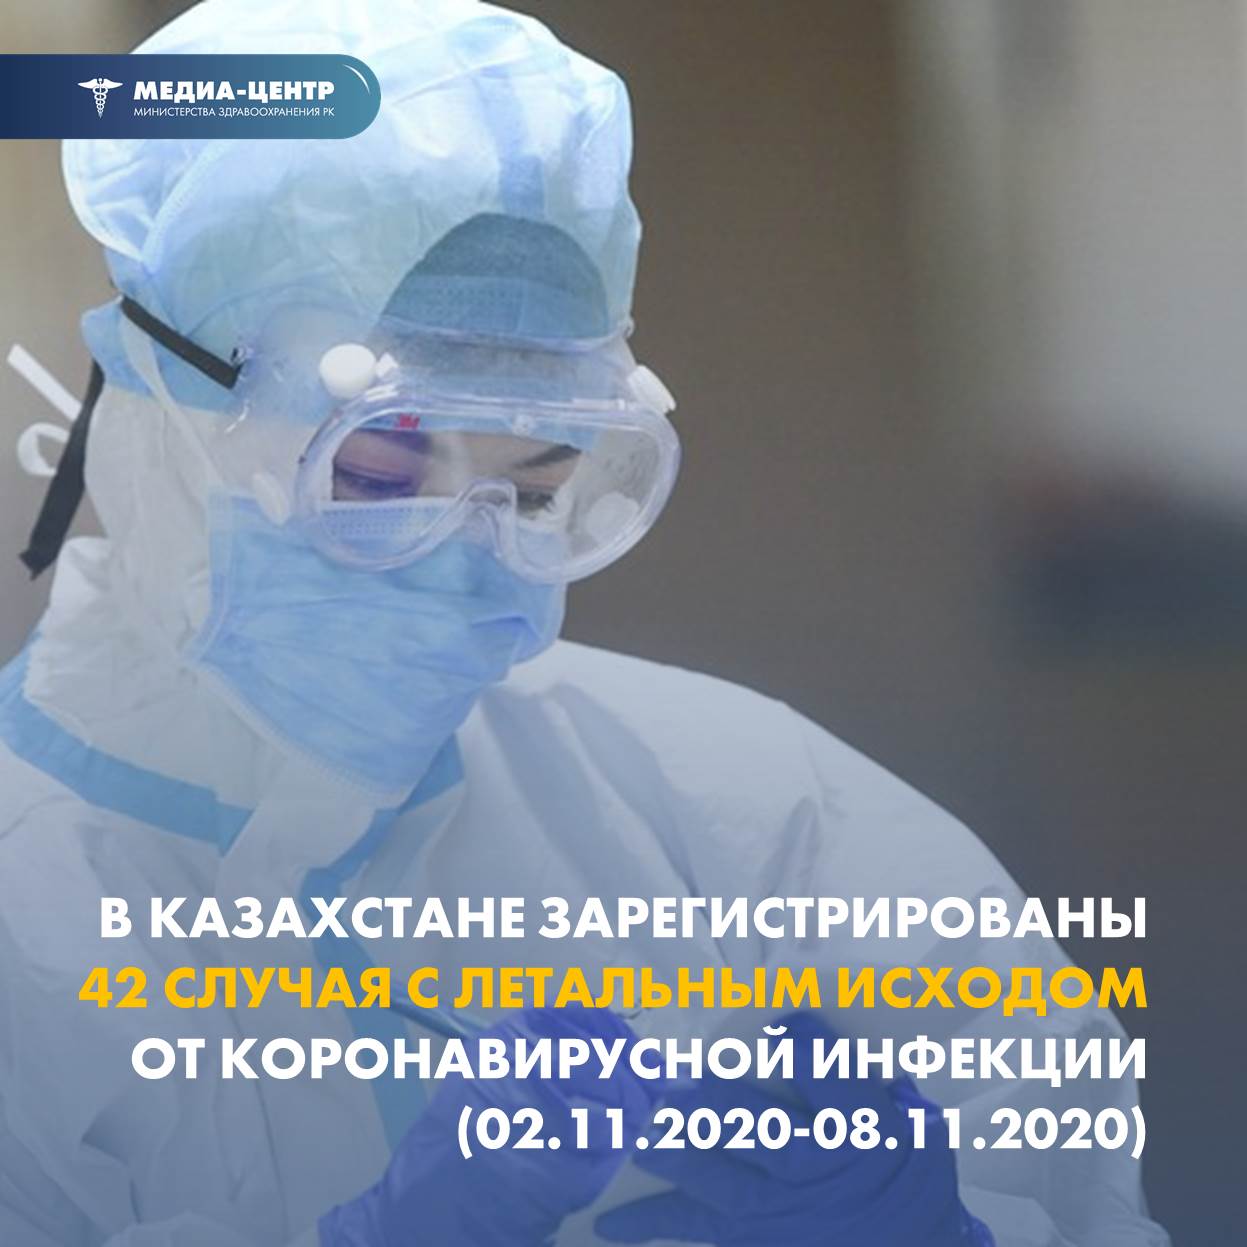 В Казахстане зарегистрированы 42 случая с летальным исходом от коронавирусной инфекции (02.11.2020 – 08.11.2020)